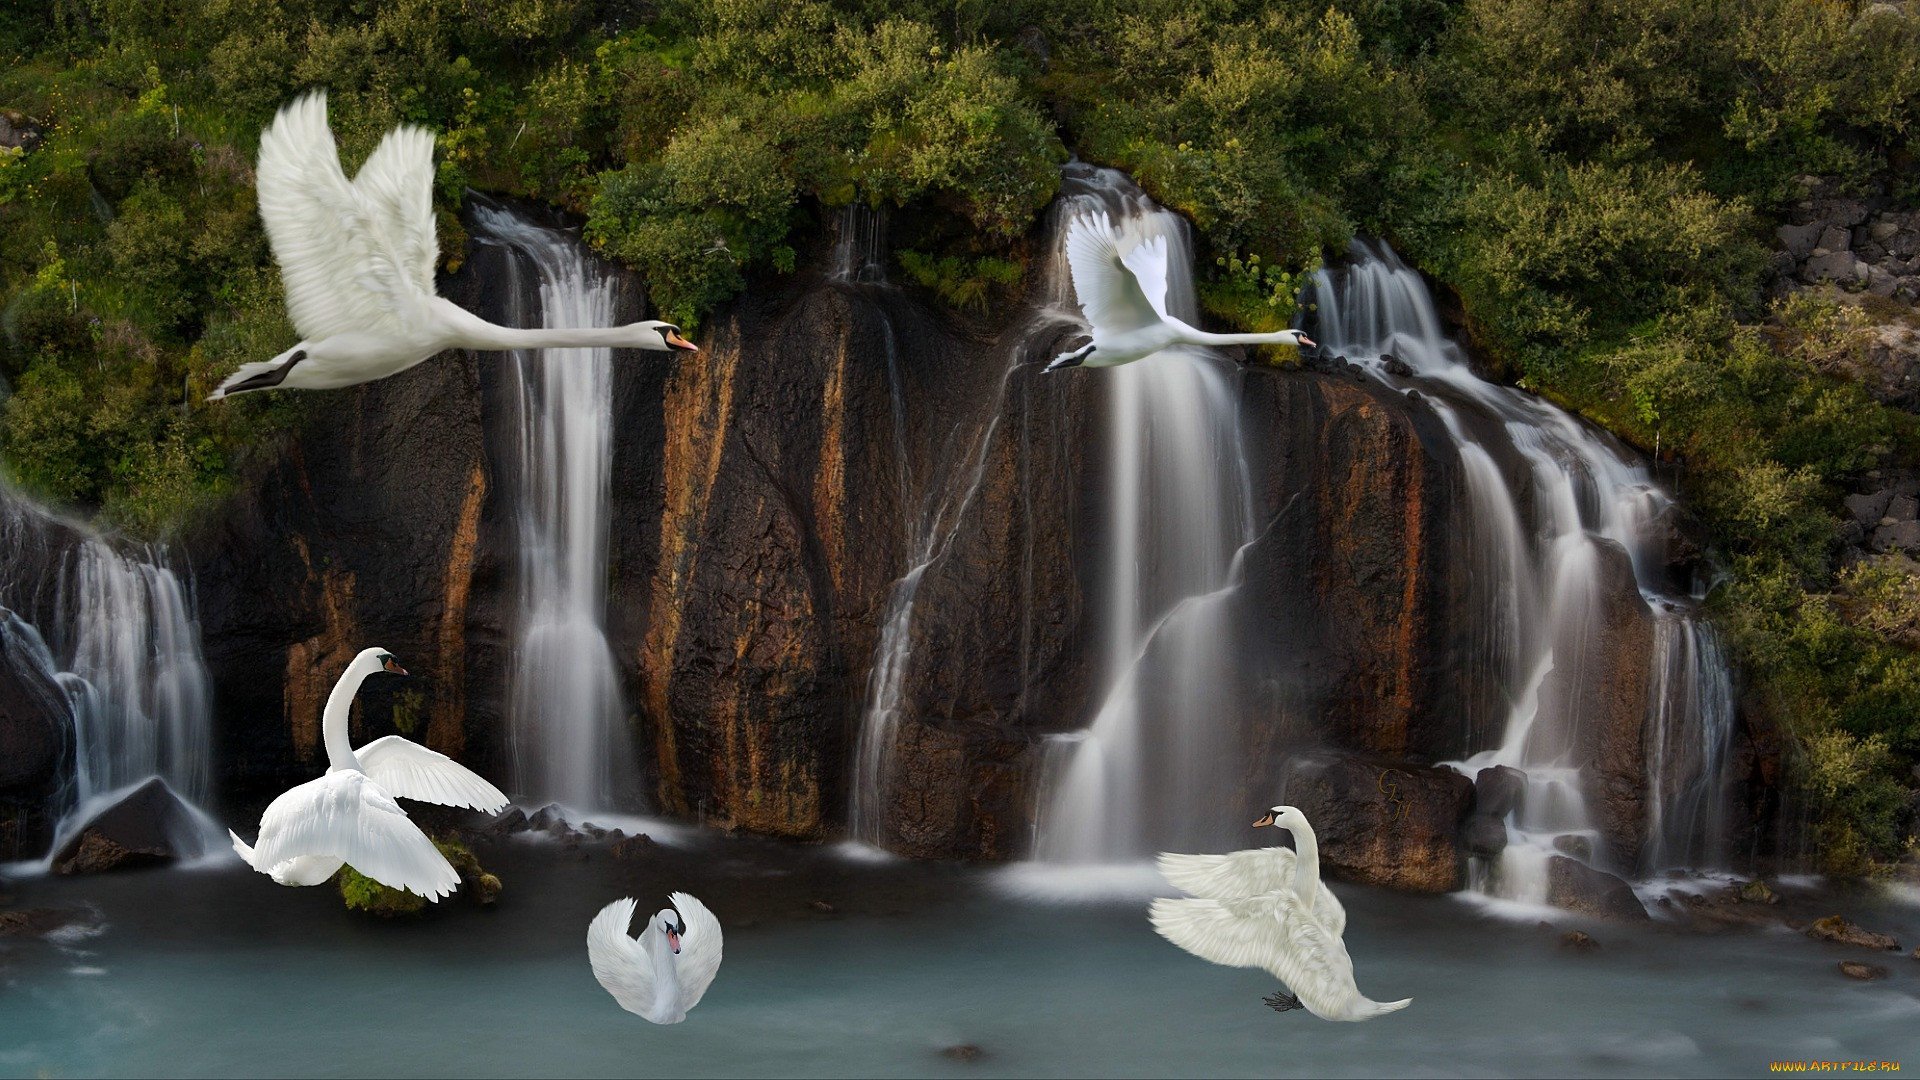 Движущиеся обои на заставку. Красивые водопады. Водопад и птицы. Живая природа. Фон водопад.